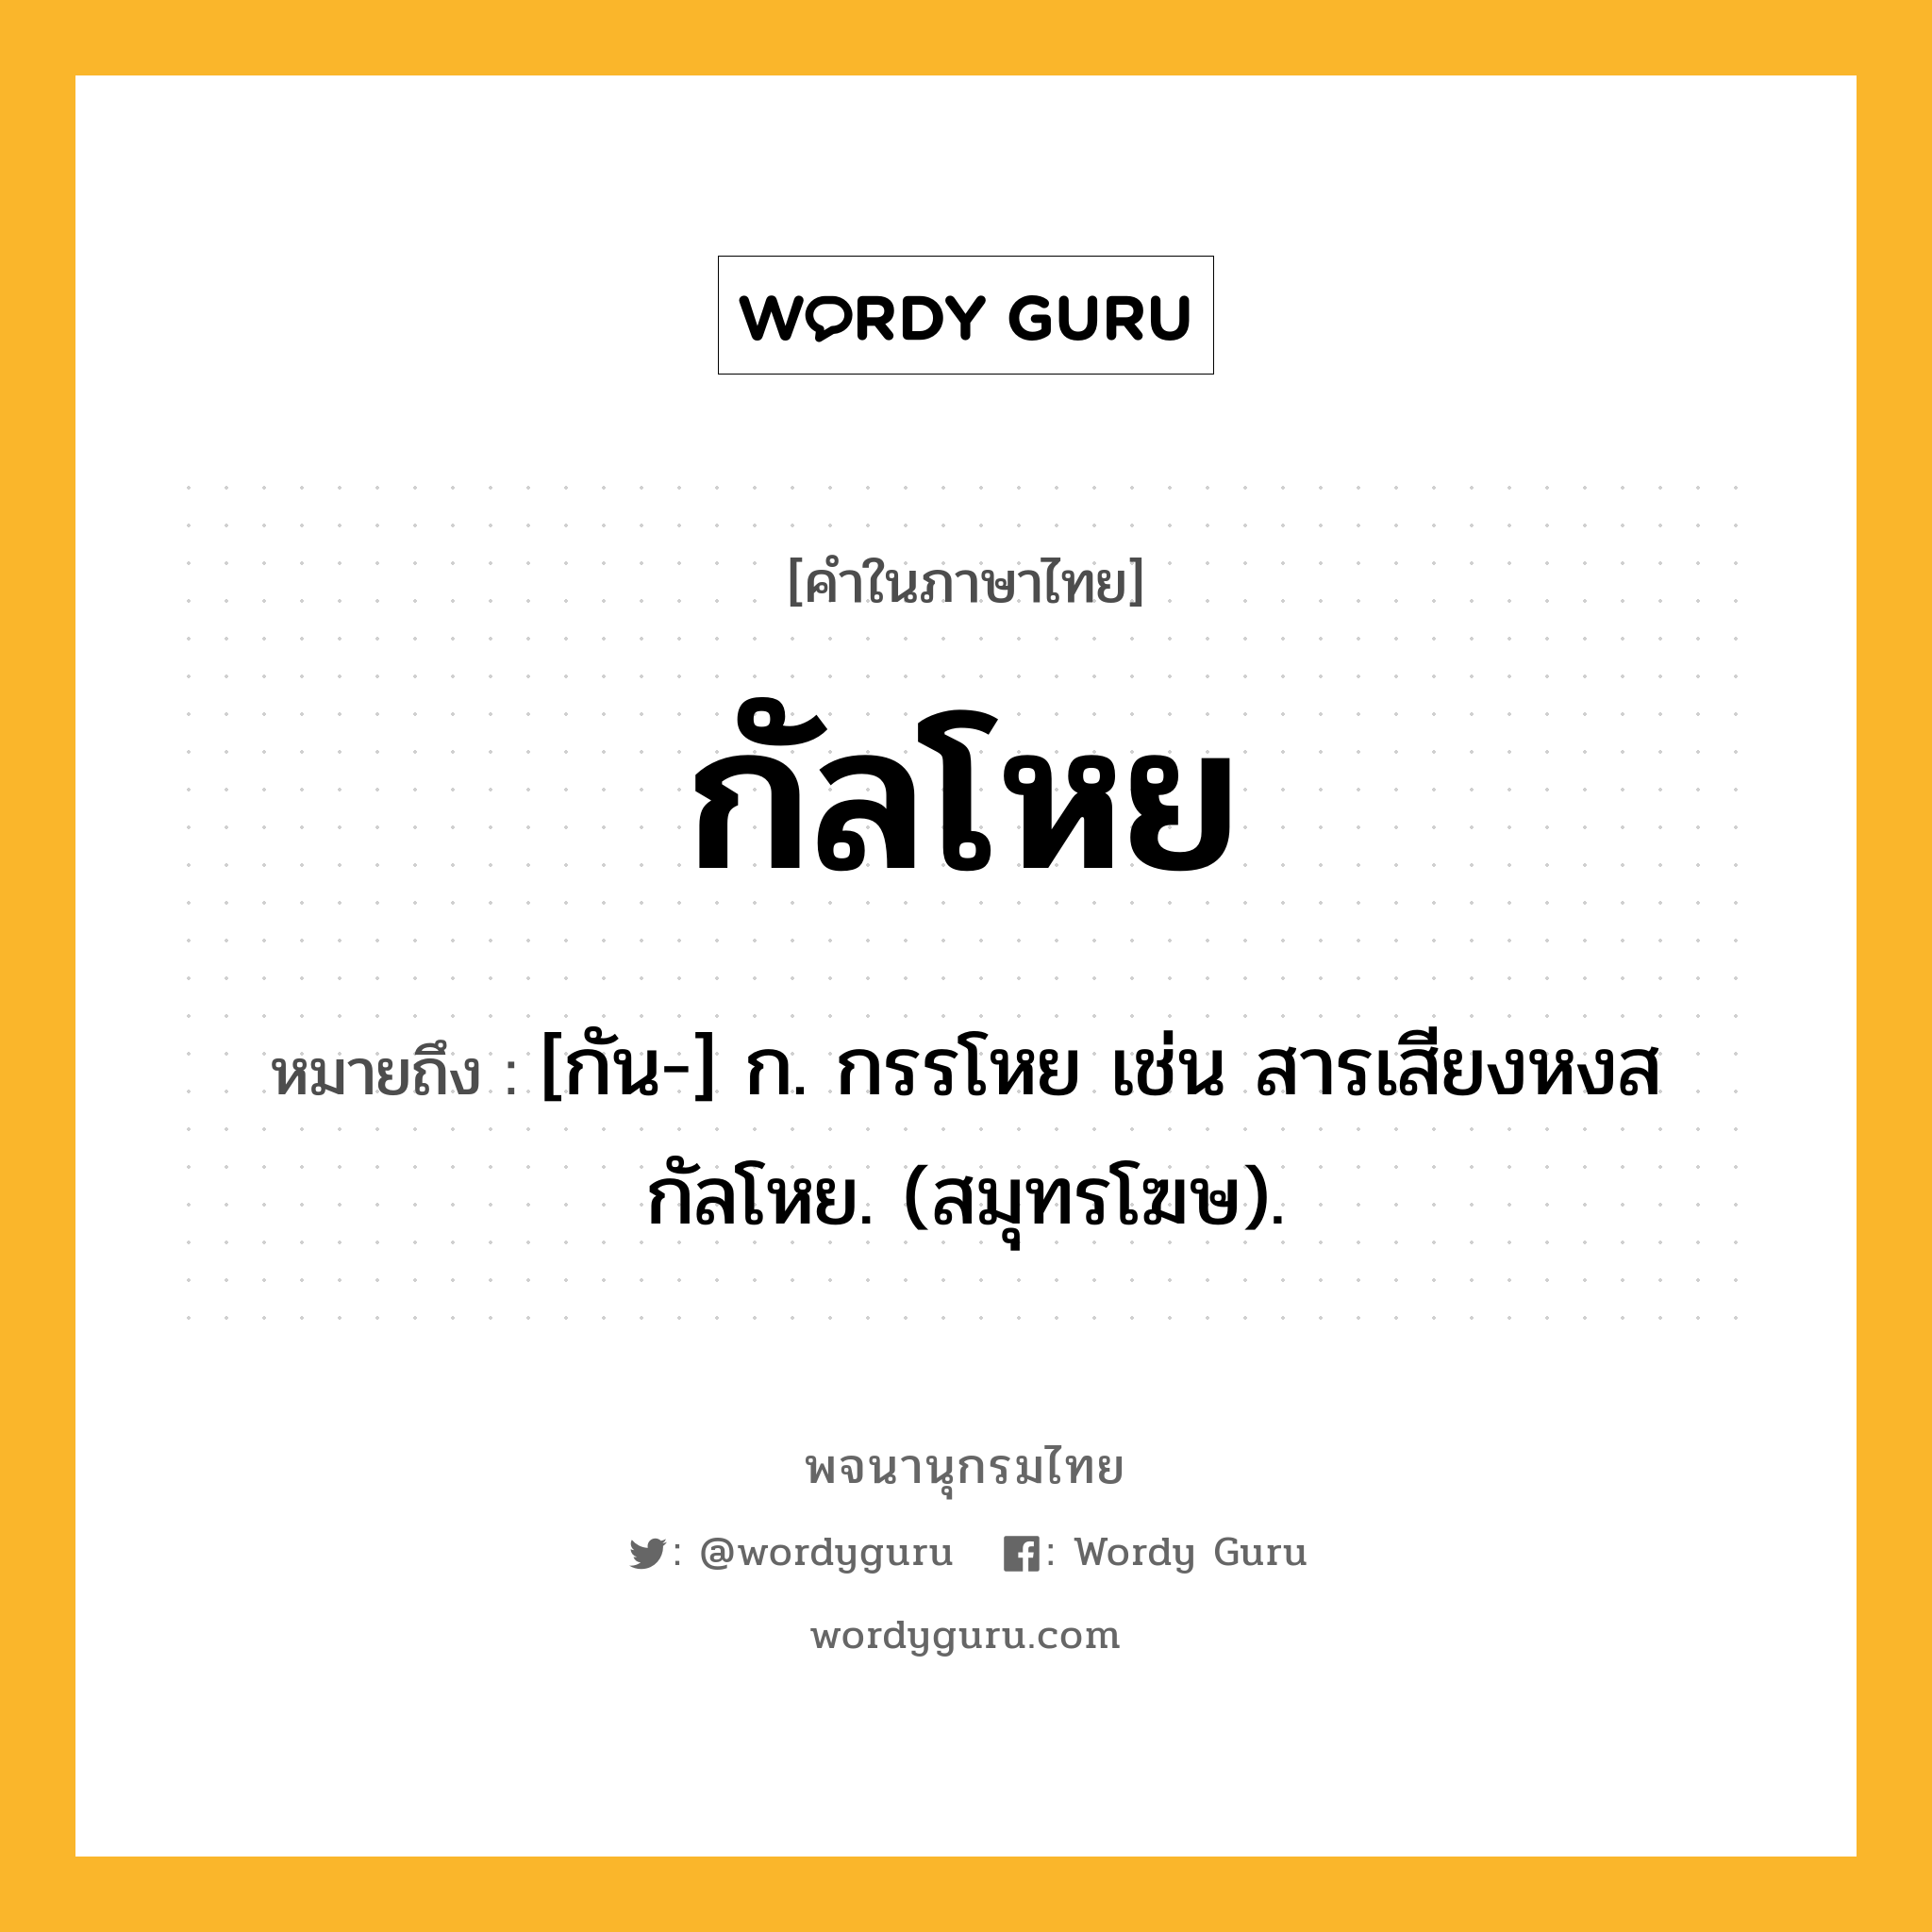 กัลโหย หมายถึงอะไร?, คำในภาษาไทย กัลโหย หมายถึง [กัน-] ก. กรรโหย เช่น สารเสียงหงสกัลโหย. (สมุทรโฆษ).